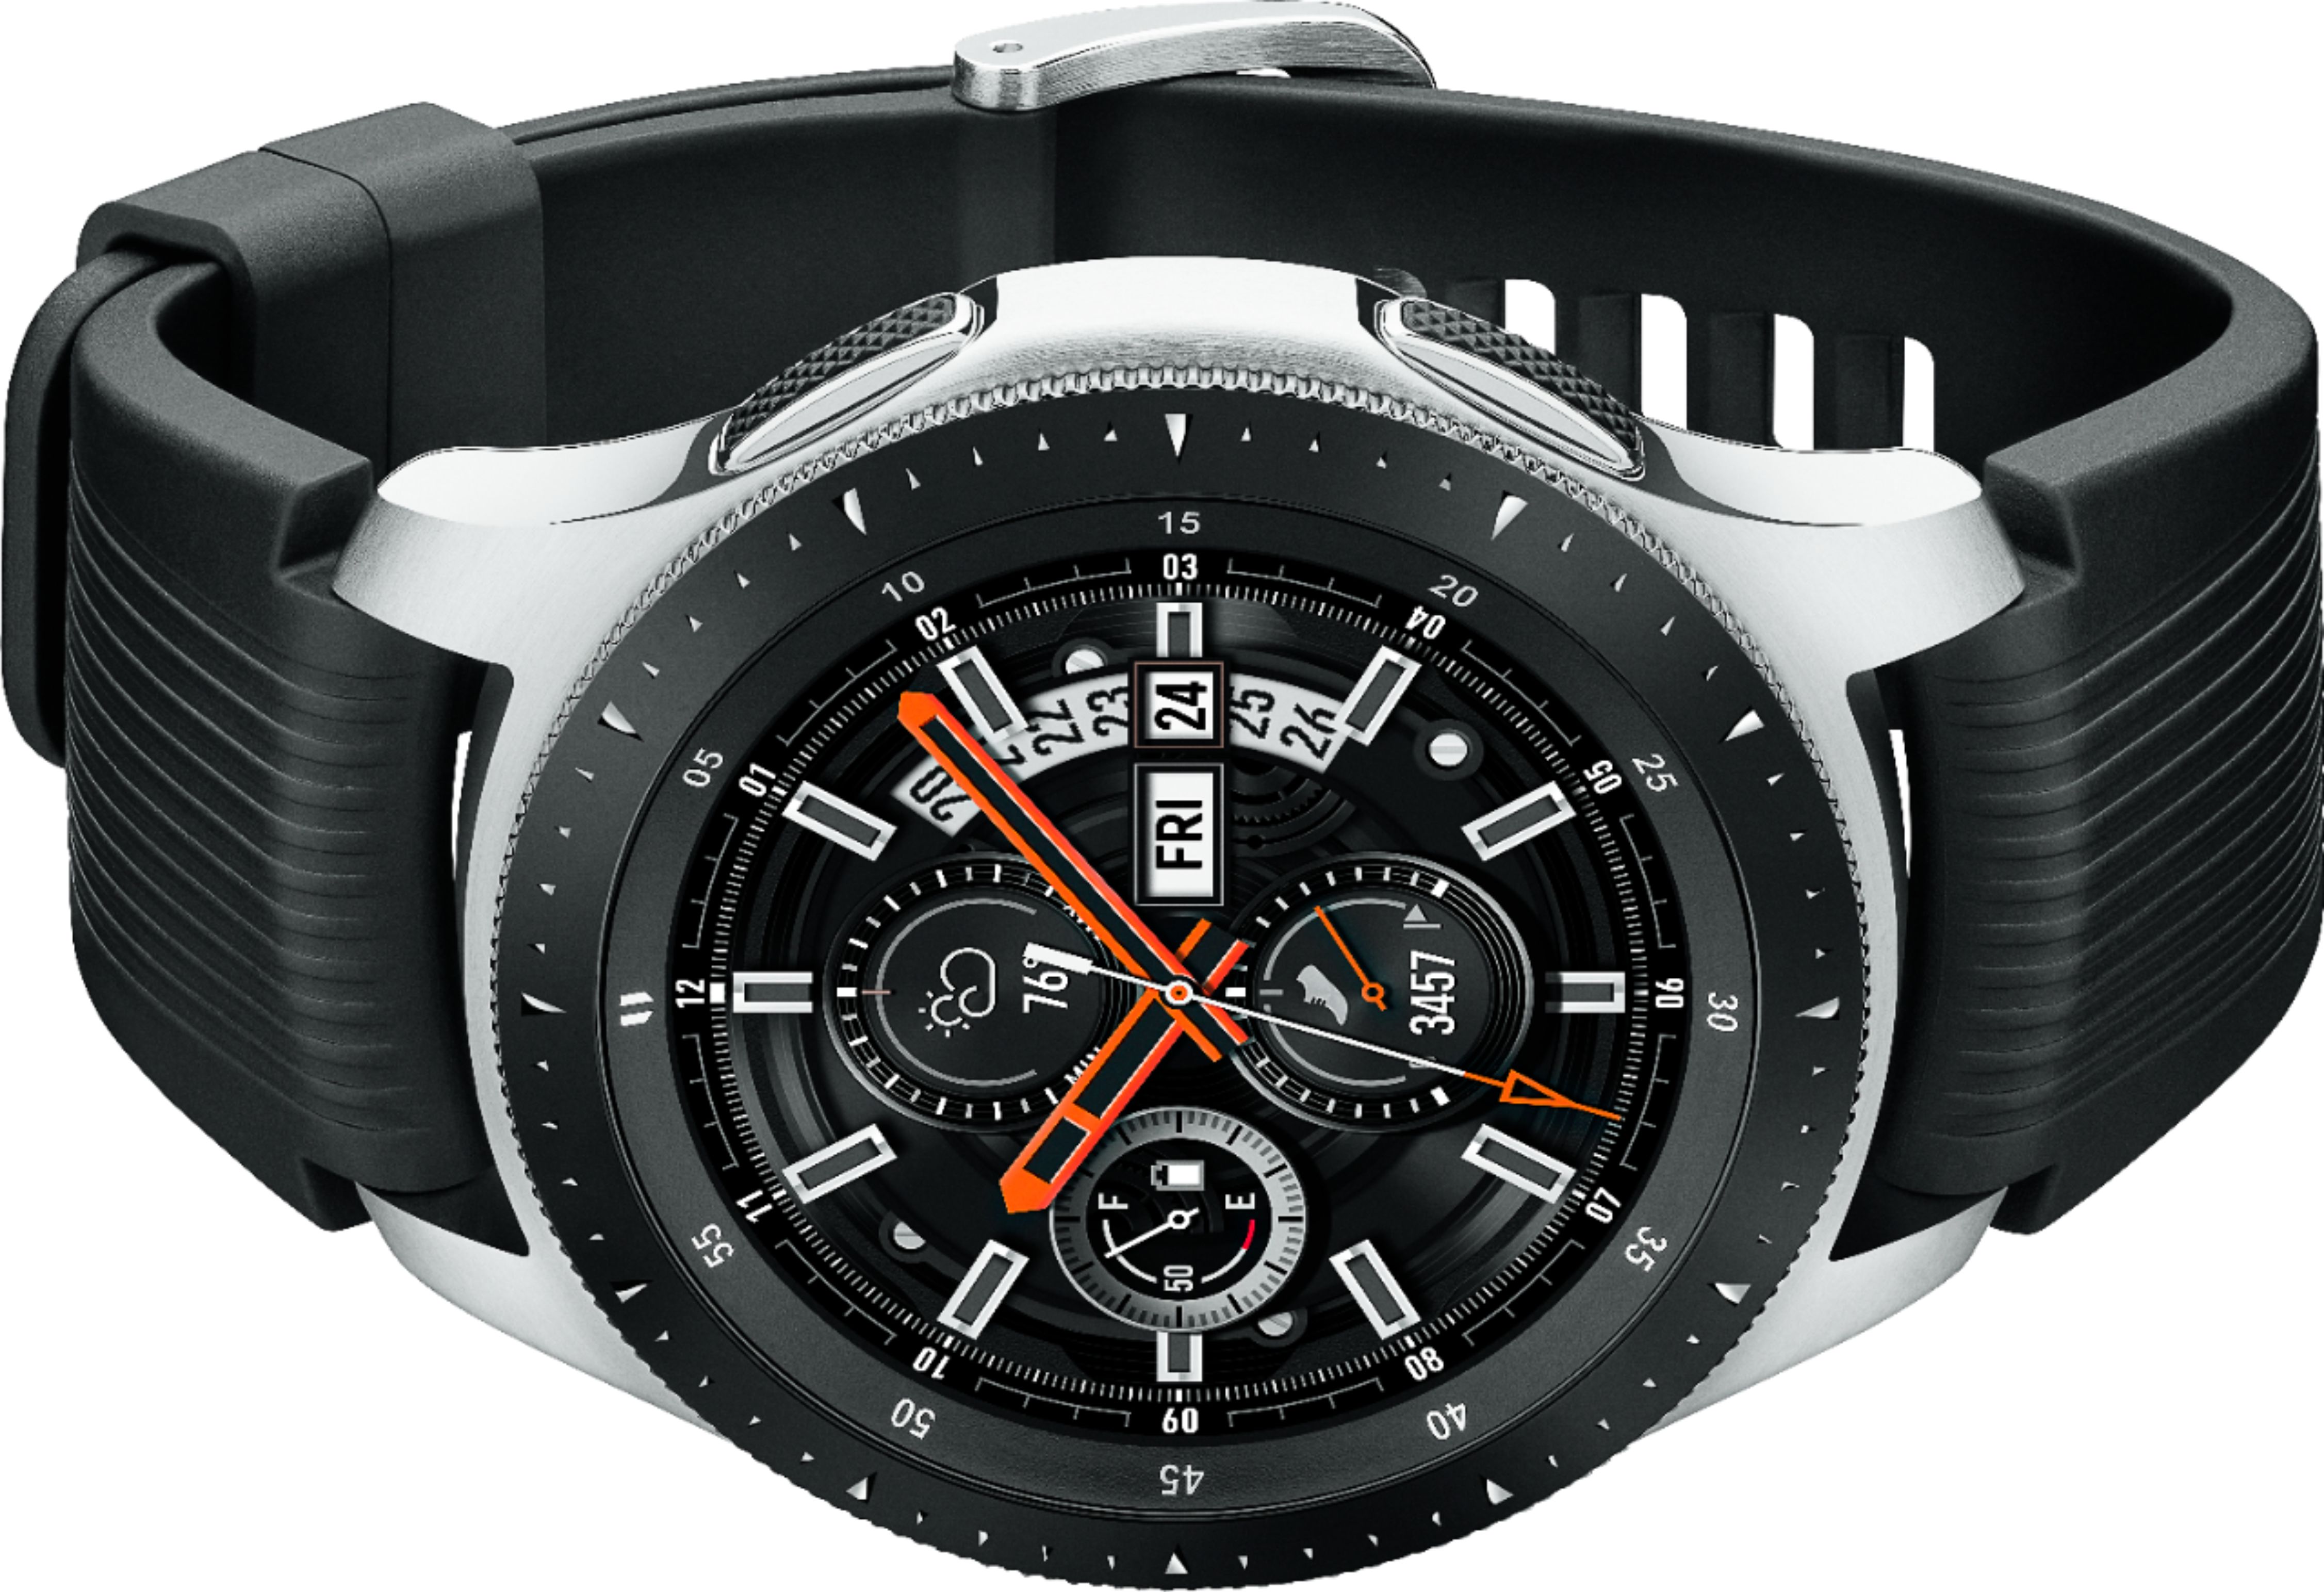 Best Buy: Samsung Galaxy Watch 46mm Stainless Steel Silver -R800NZSAXAR